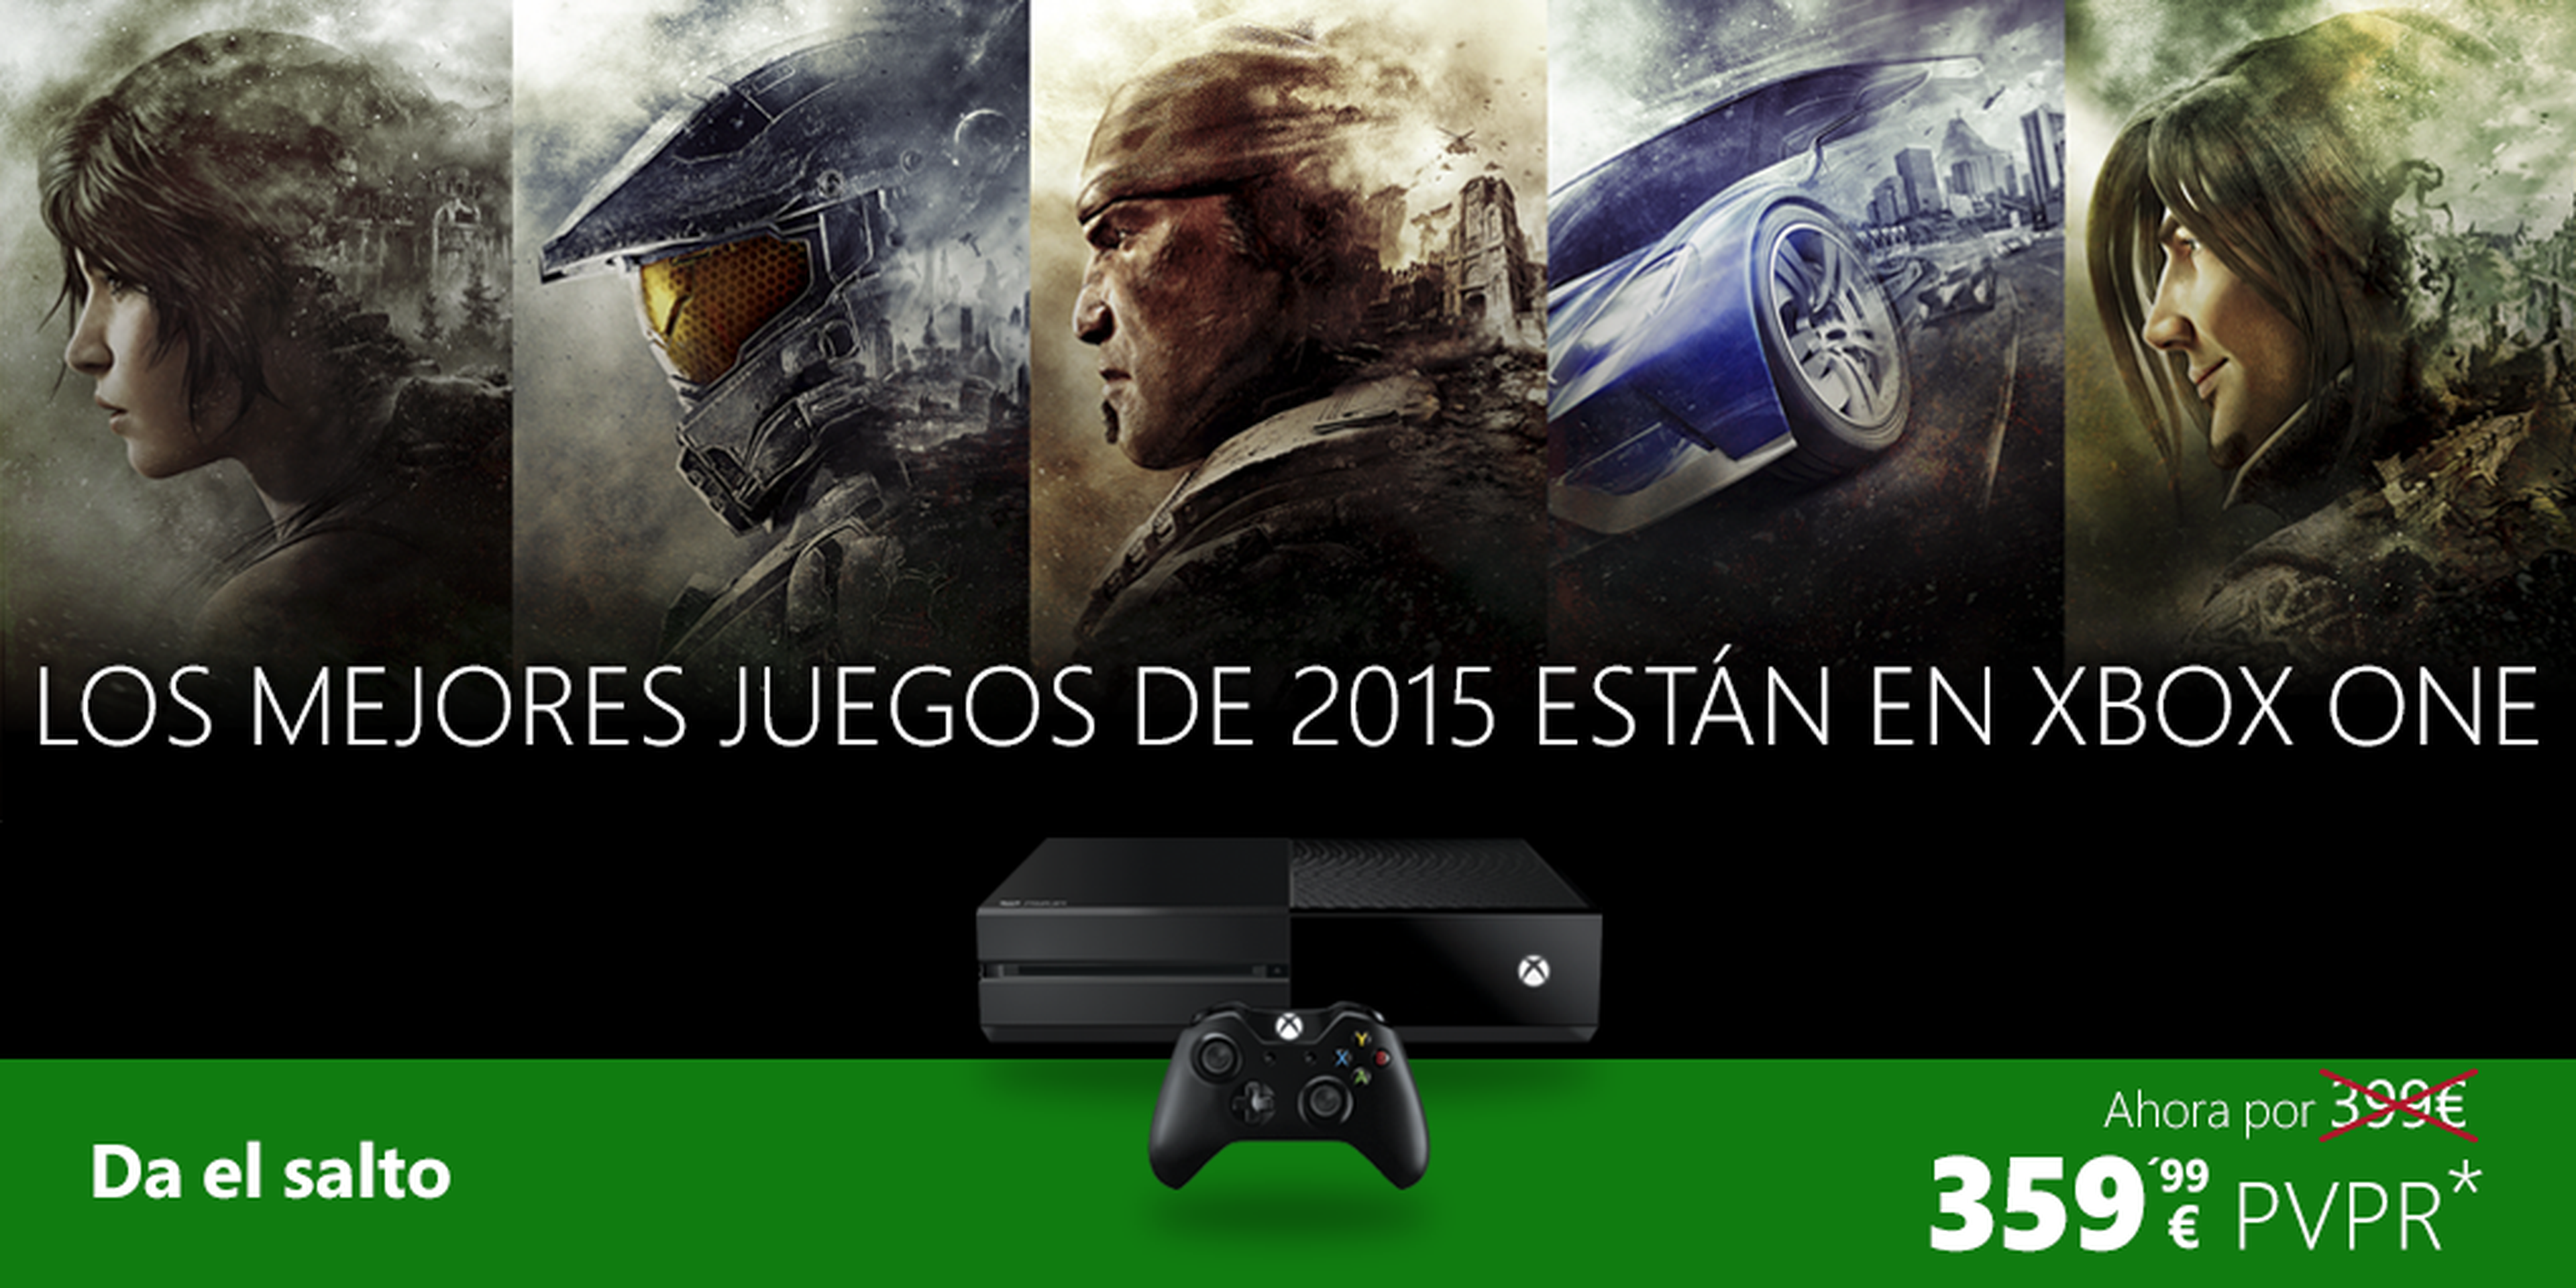 Xbox One rebaja su precio en España durante el mes de julio